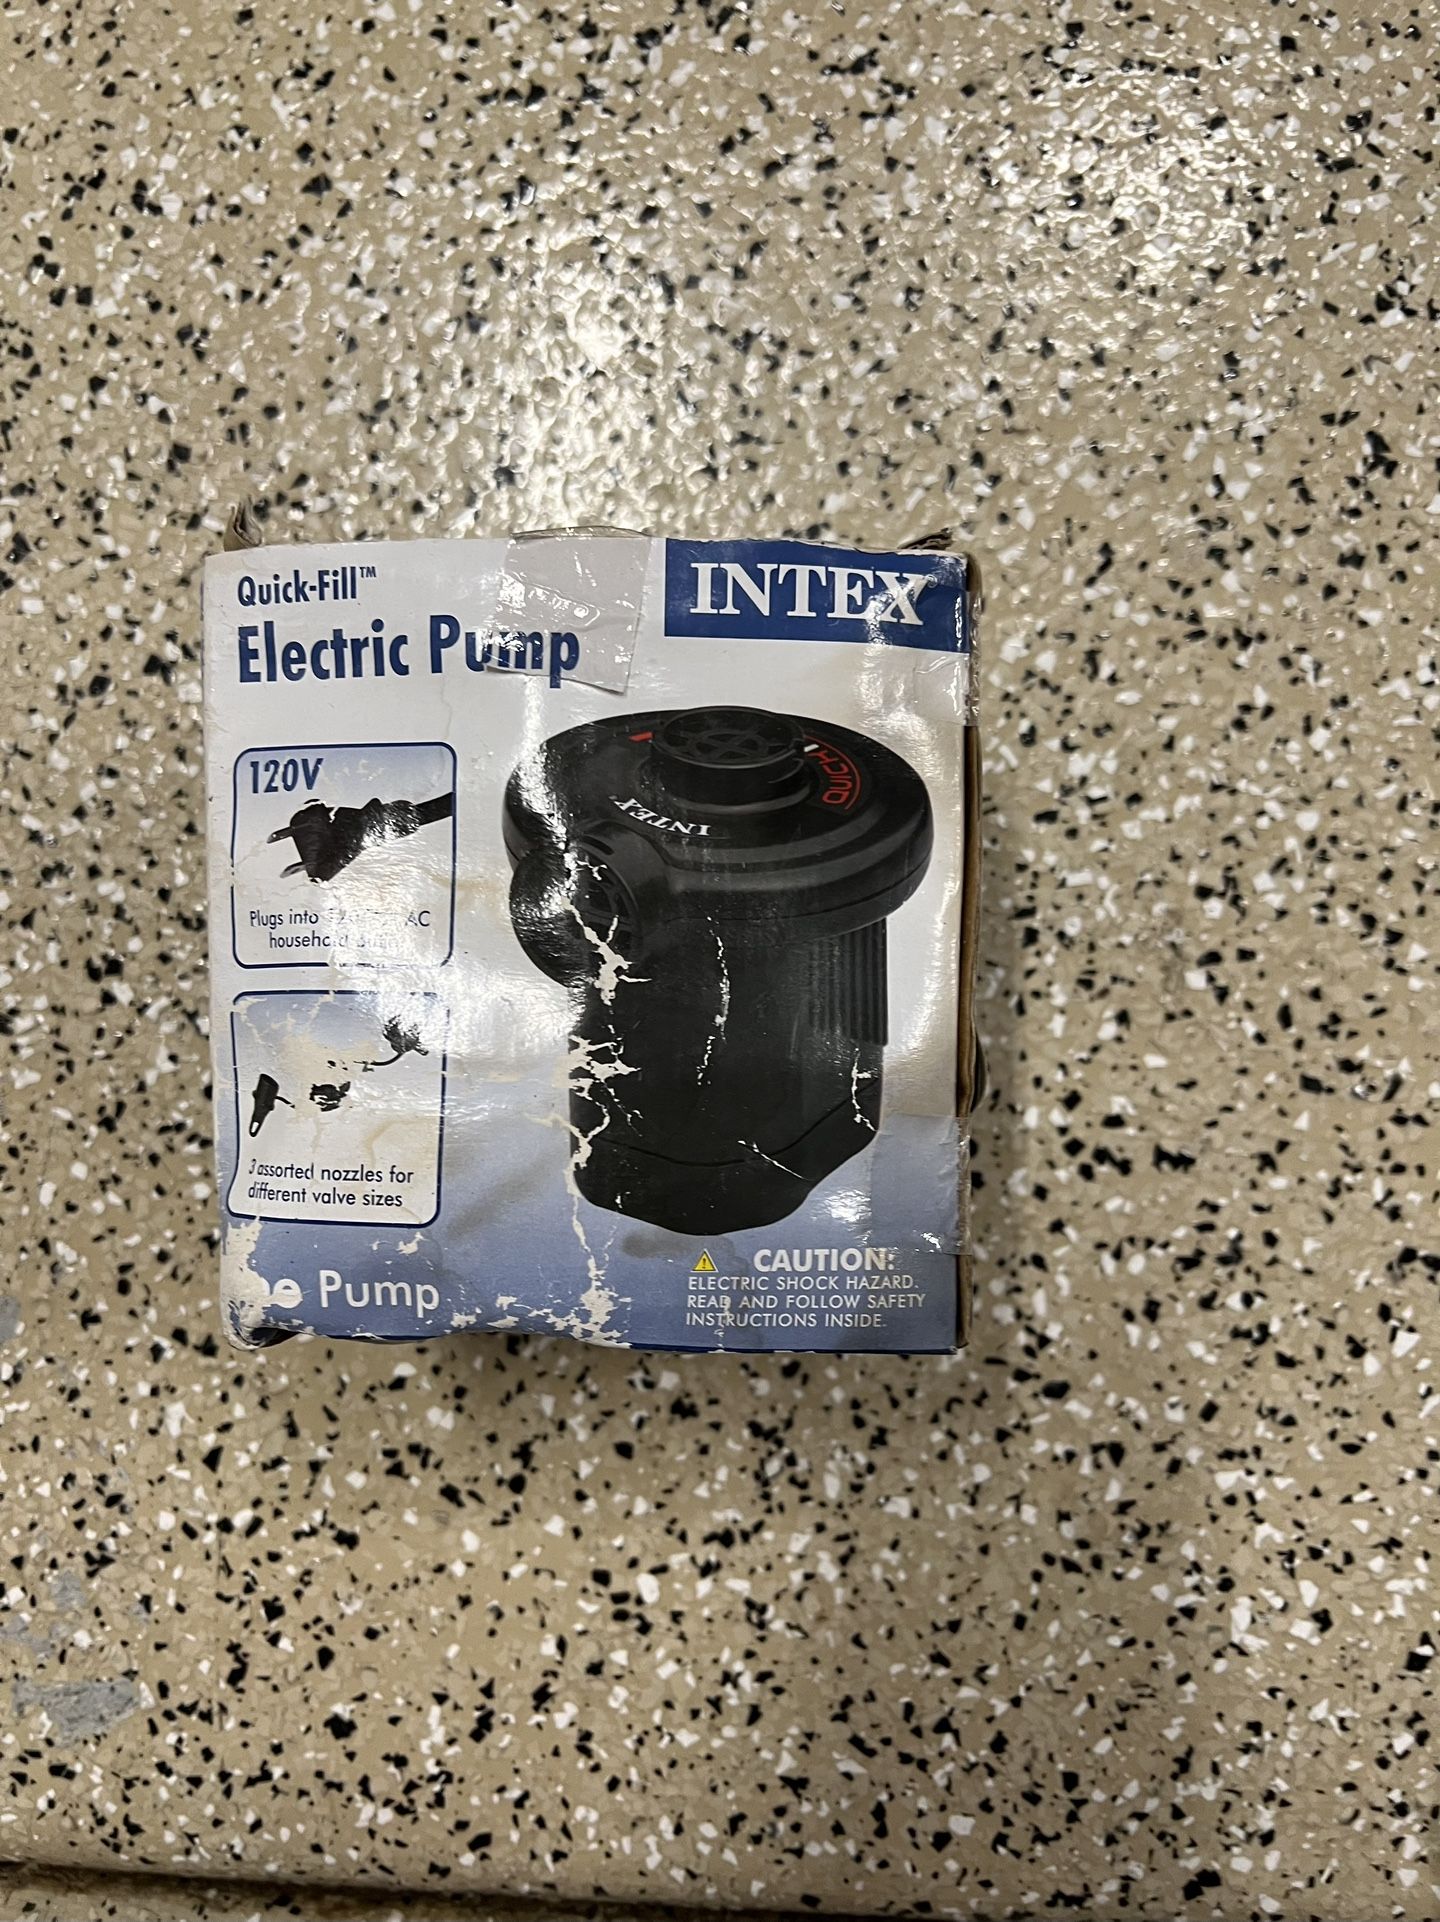 New Intex Electric Pump